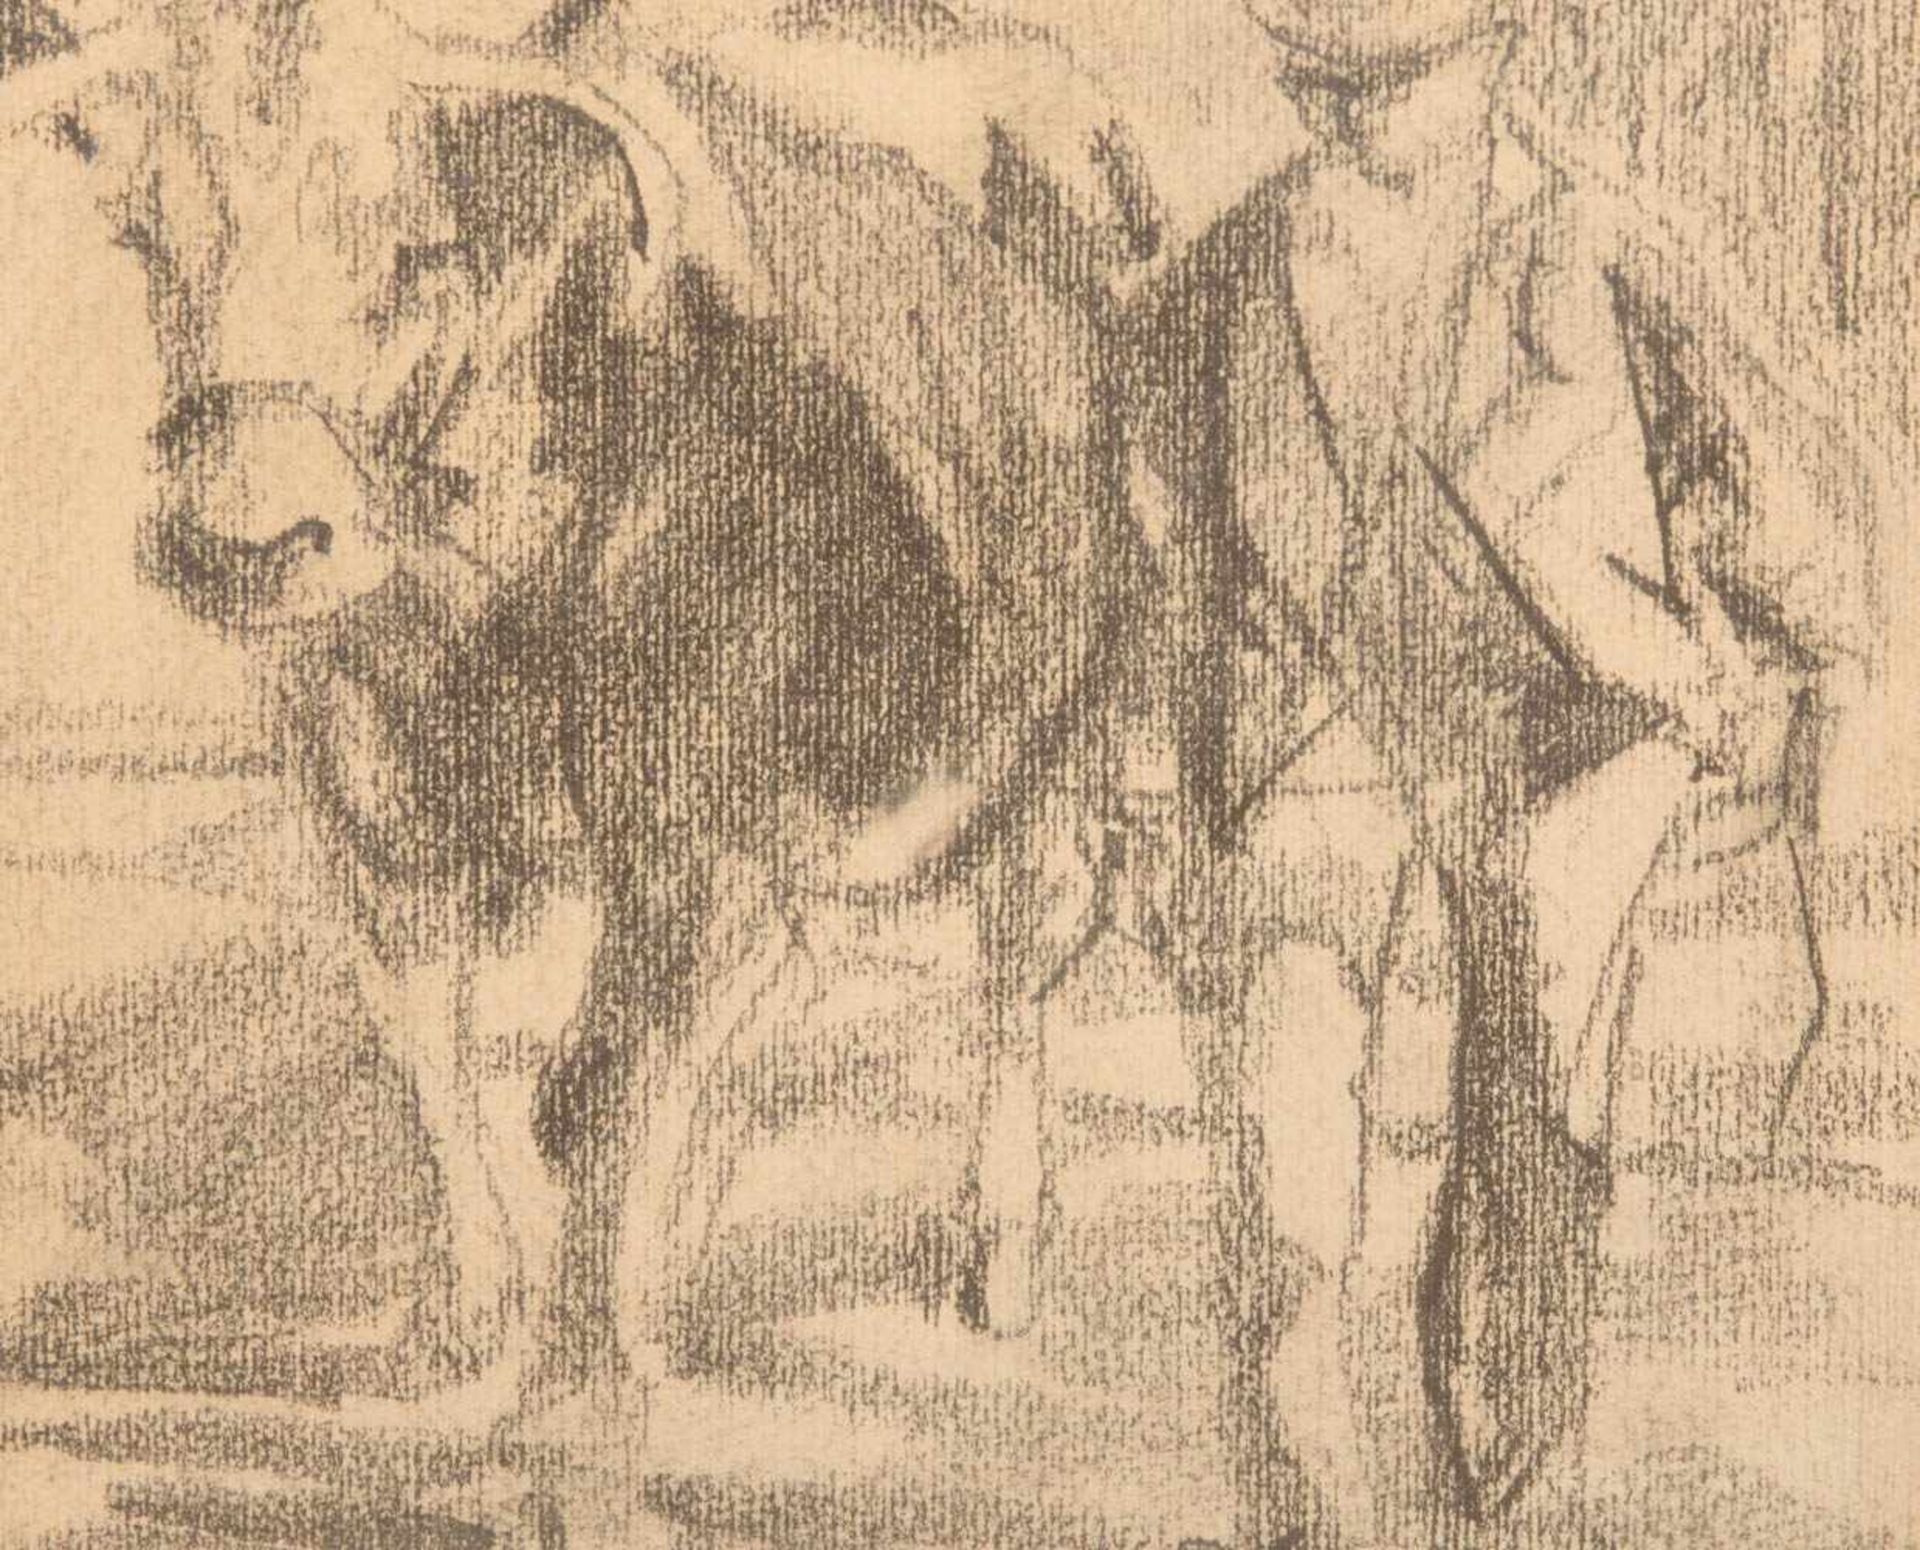 Willy Zügel, Bauer mit Kuh, Blei auf Papier, Deutschland 20. Jh.Willy Zügel (1876 - 1950).